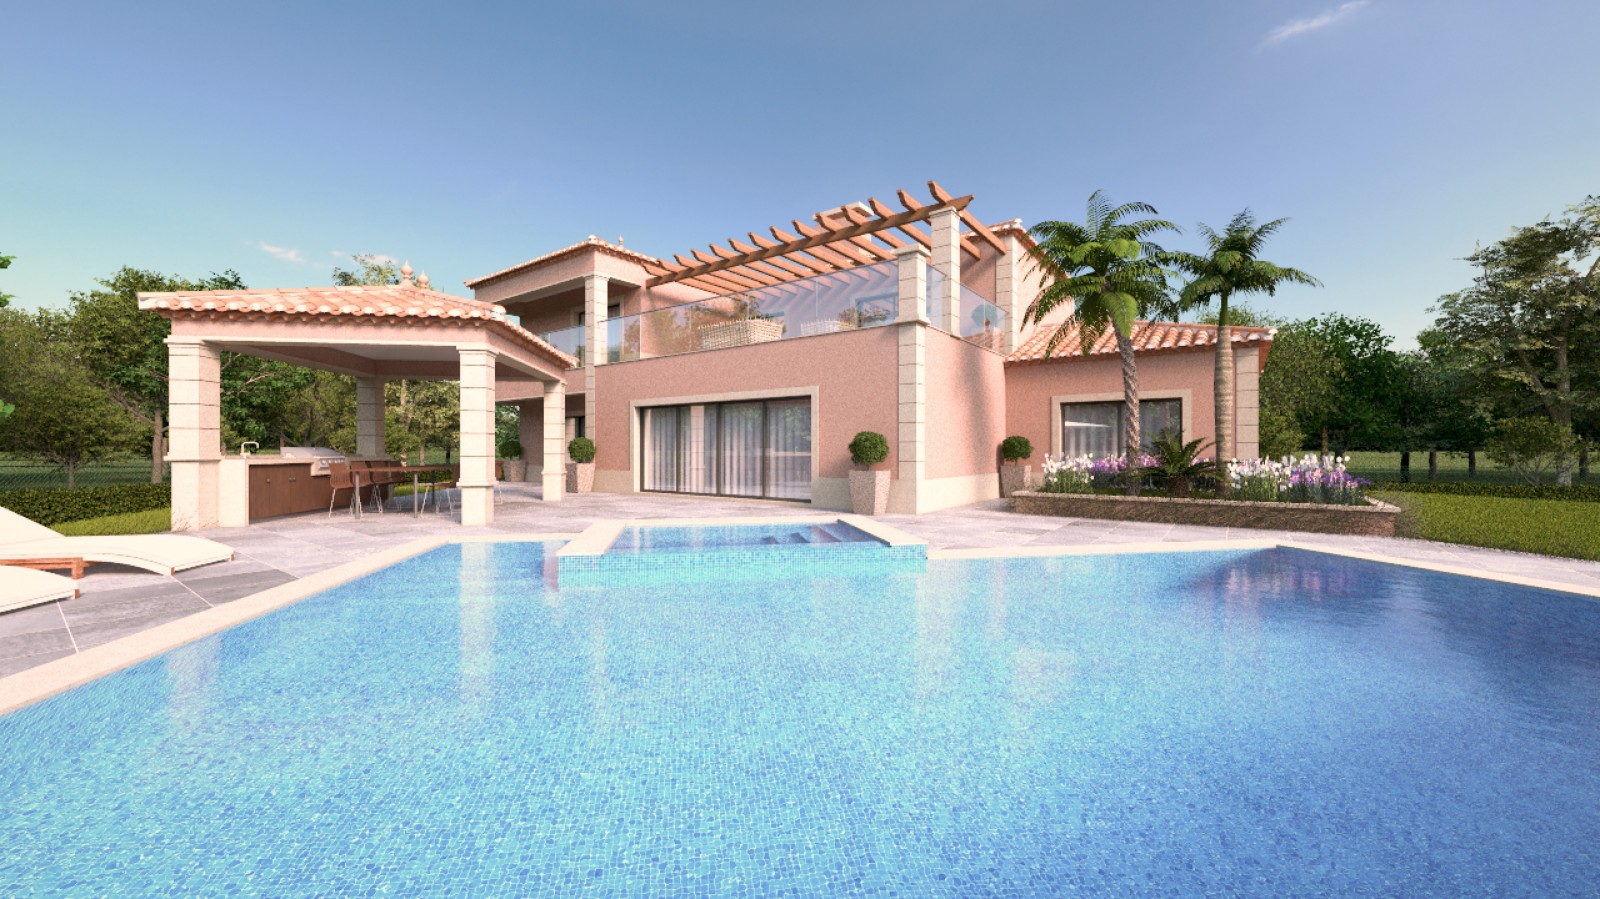 Moradia V4 com piscina, para venda em Portimão, Algarve_231718